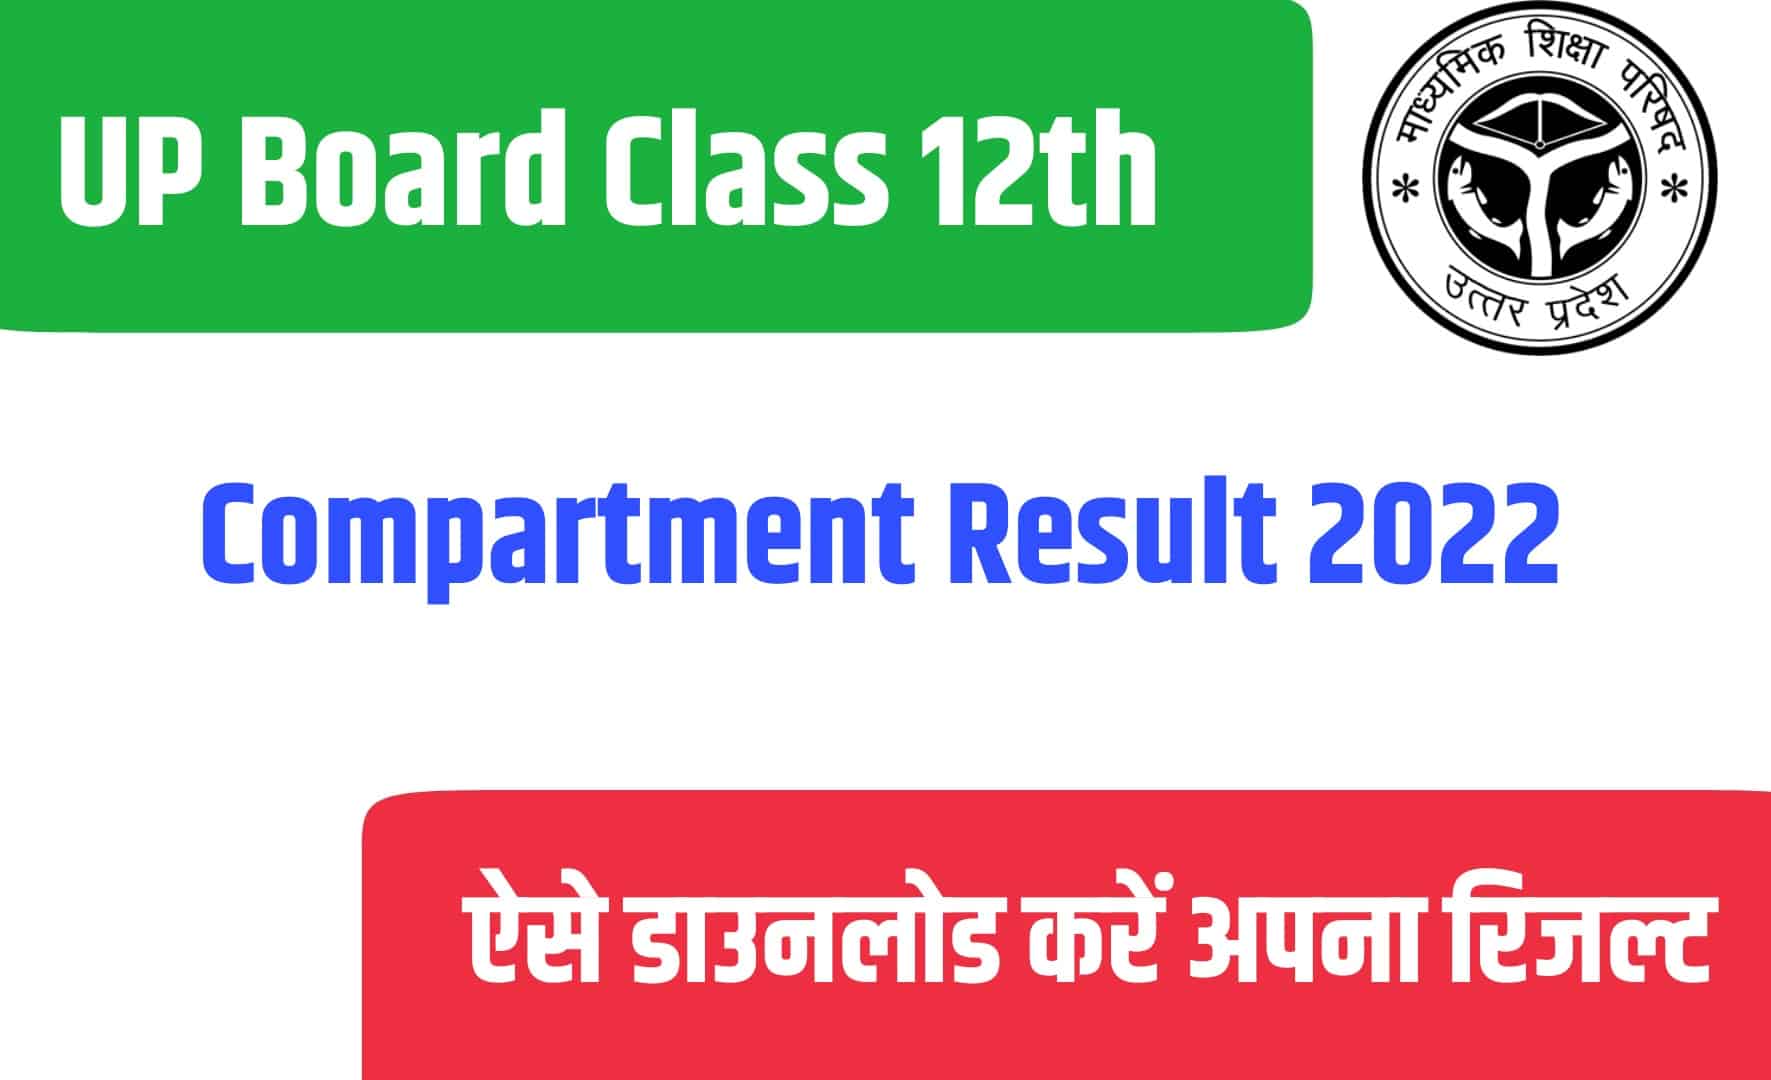 UP Board Class 12th Compartment Result 2022 | यूपी बोर्ड कक्षा 12वीं कंपार्टमेंट परीक्षा रिजल्ट जारी